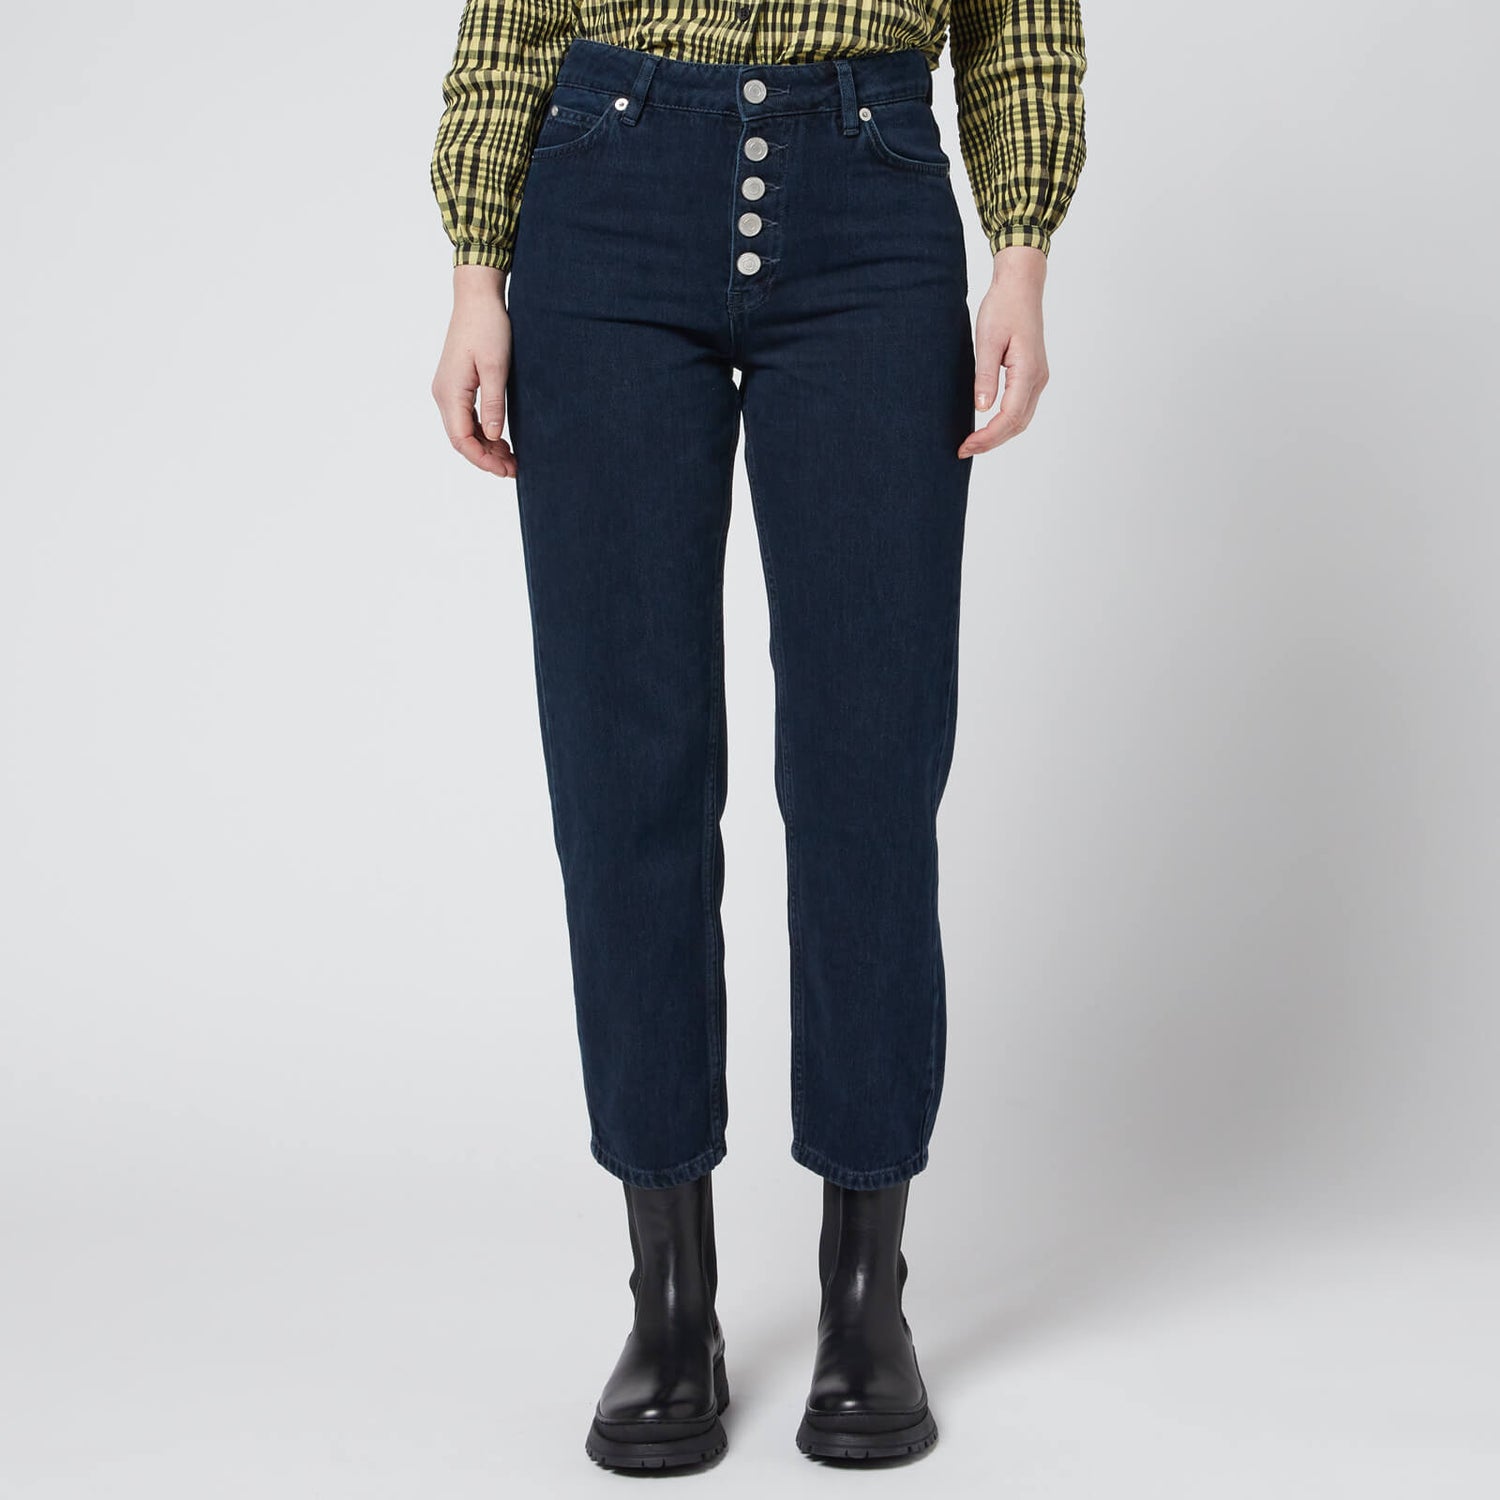 Whistles Women's Hollie Button Front Jeans - Dark Denim - UK 26